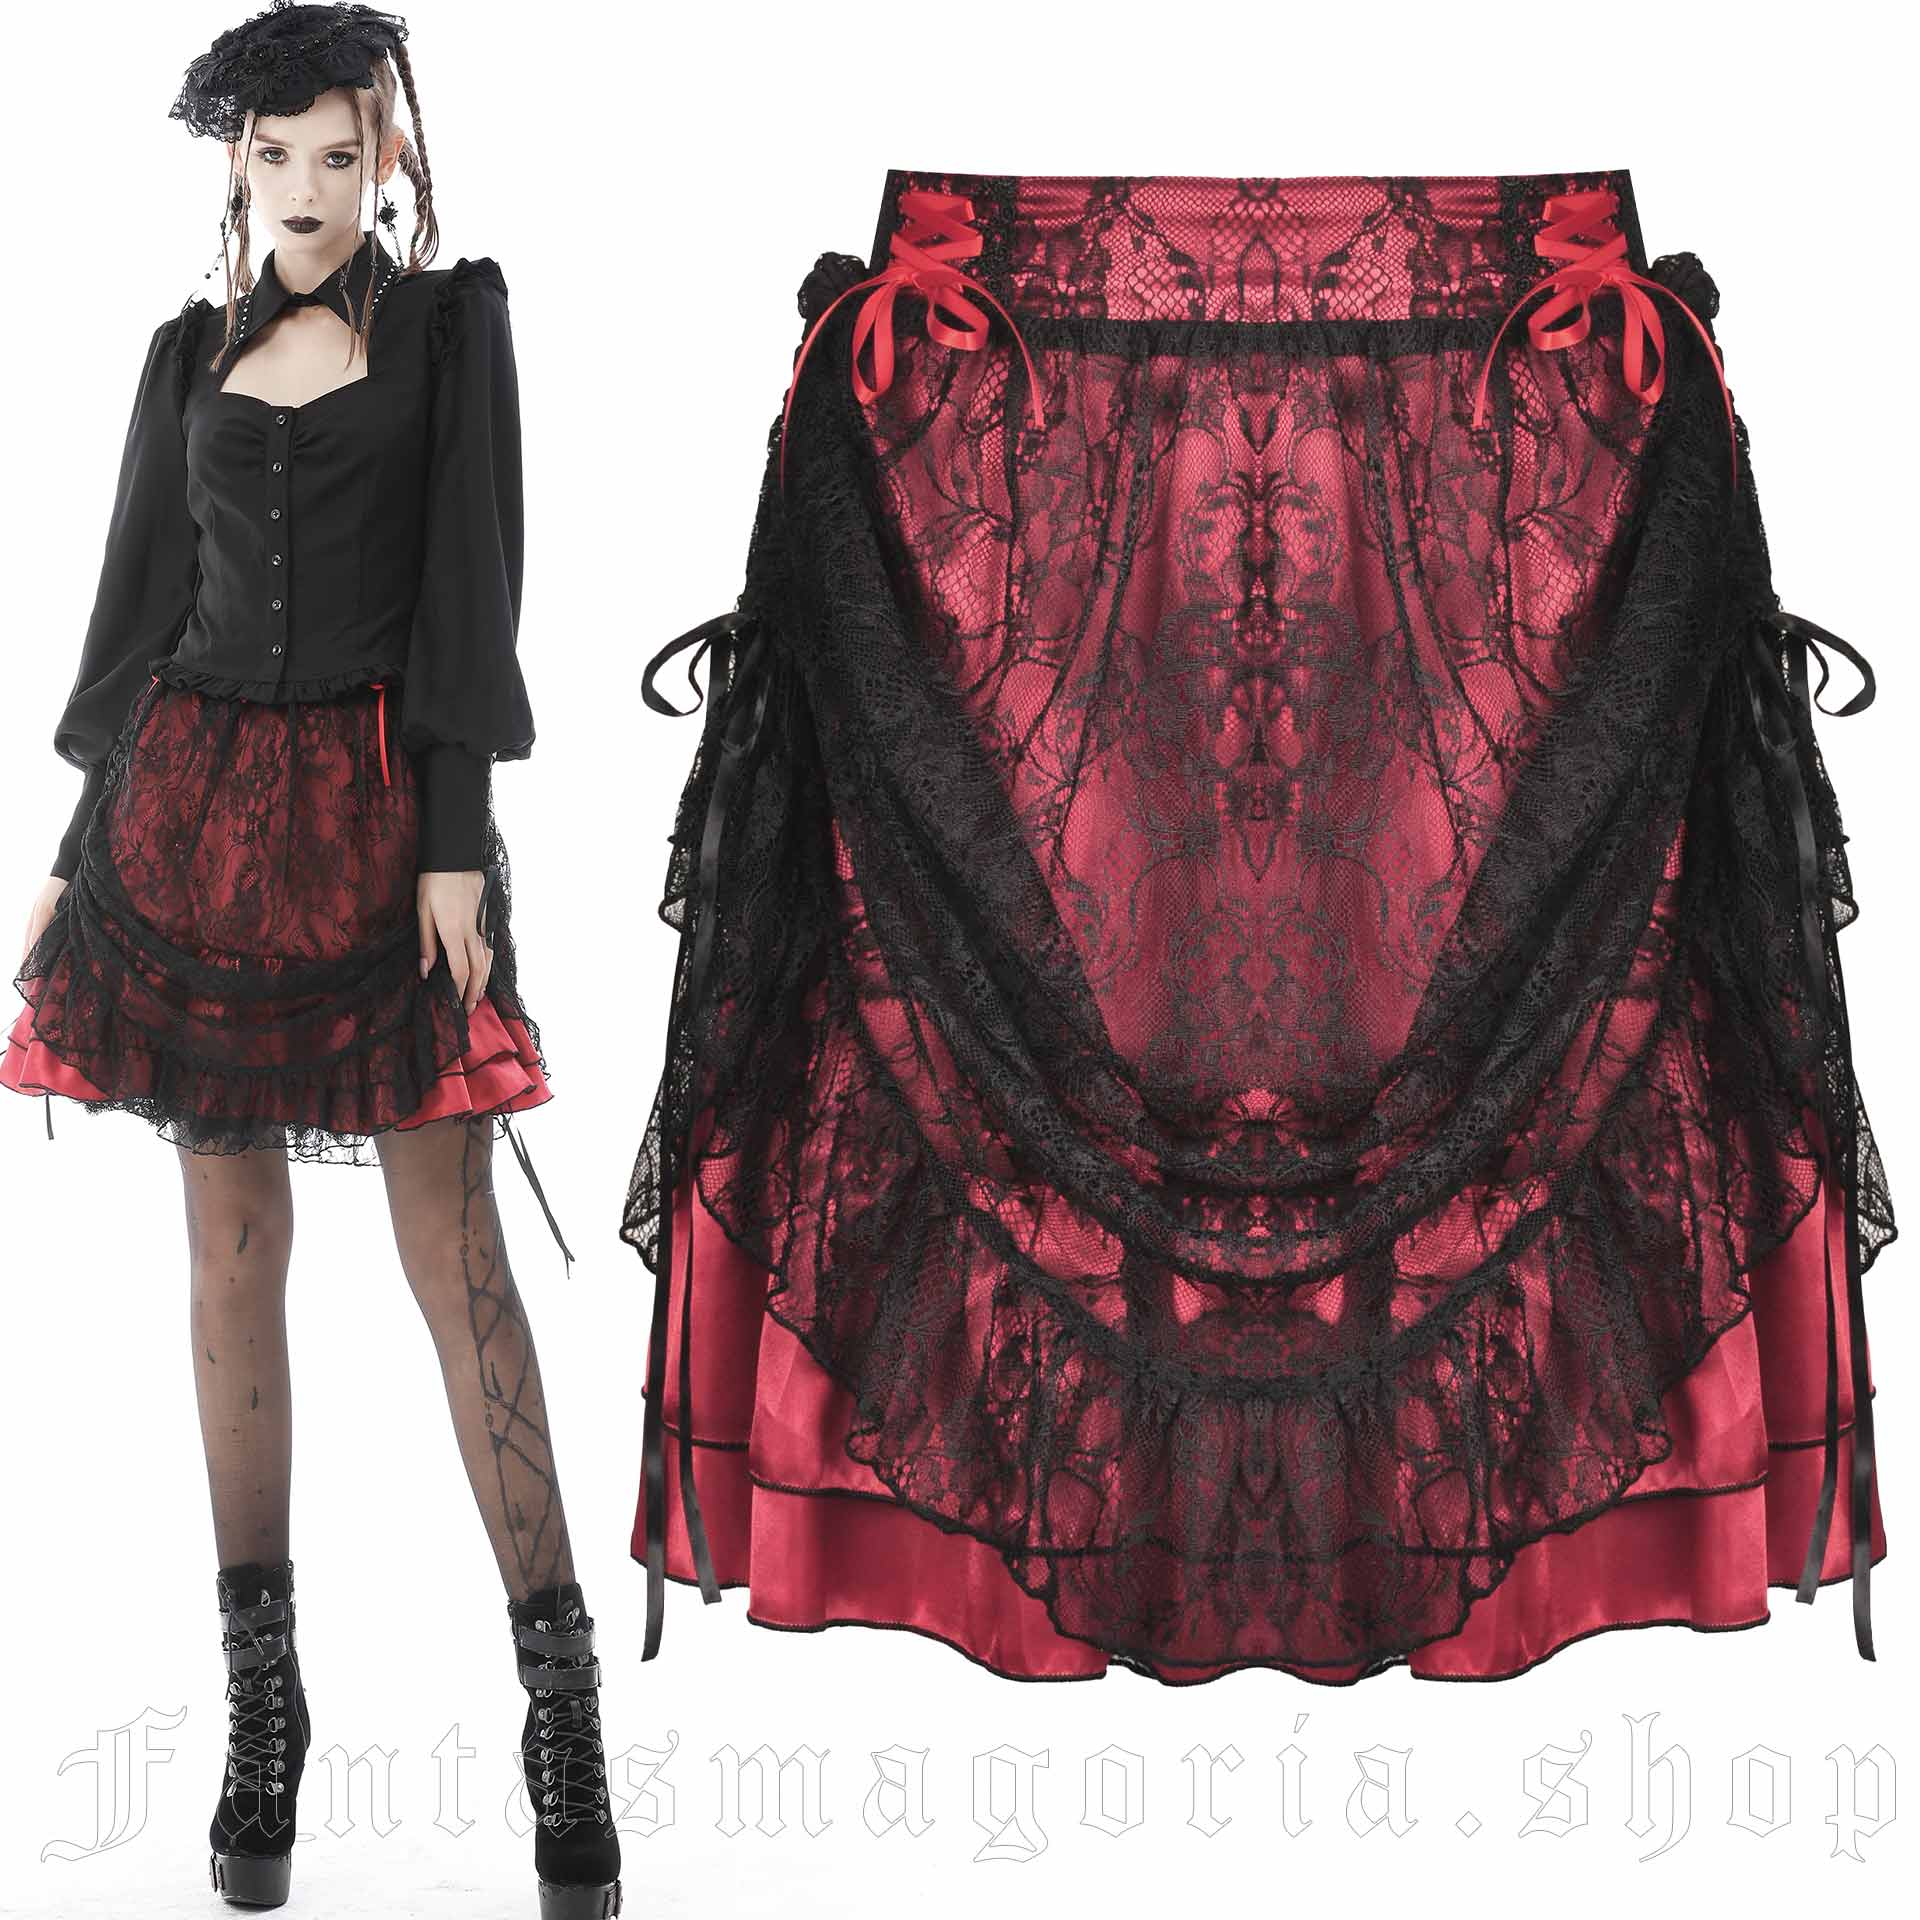 Aurora Skirt KW215 by Dark in Love brand